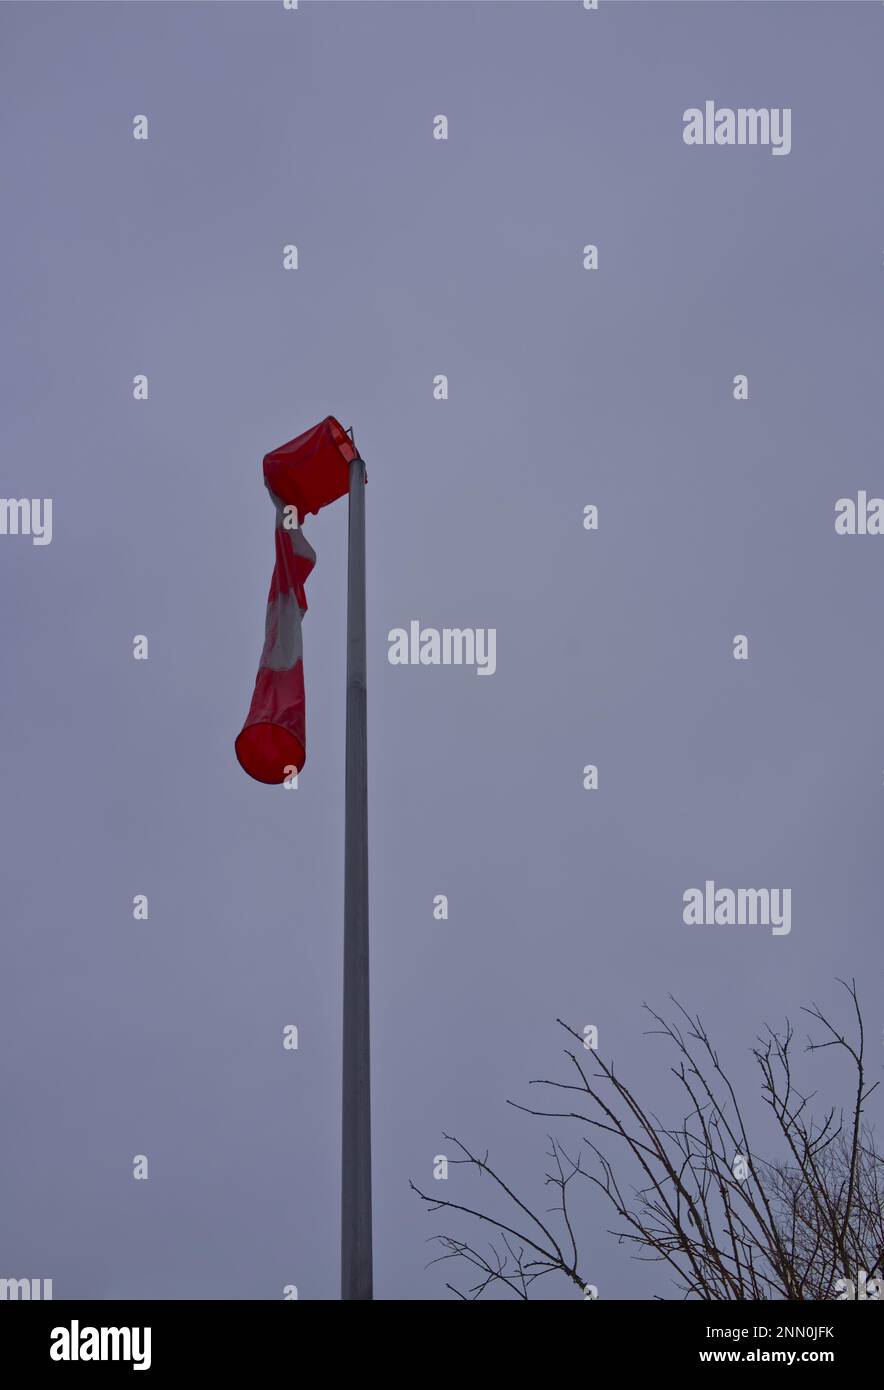 Eine Windsocke in rot-weißen Streifen in hängender Position an einem Laternenpfahl, die einen Windmangel signalisiert (möglicherweise die Windstille vor dem Sturm) Stockfoto